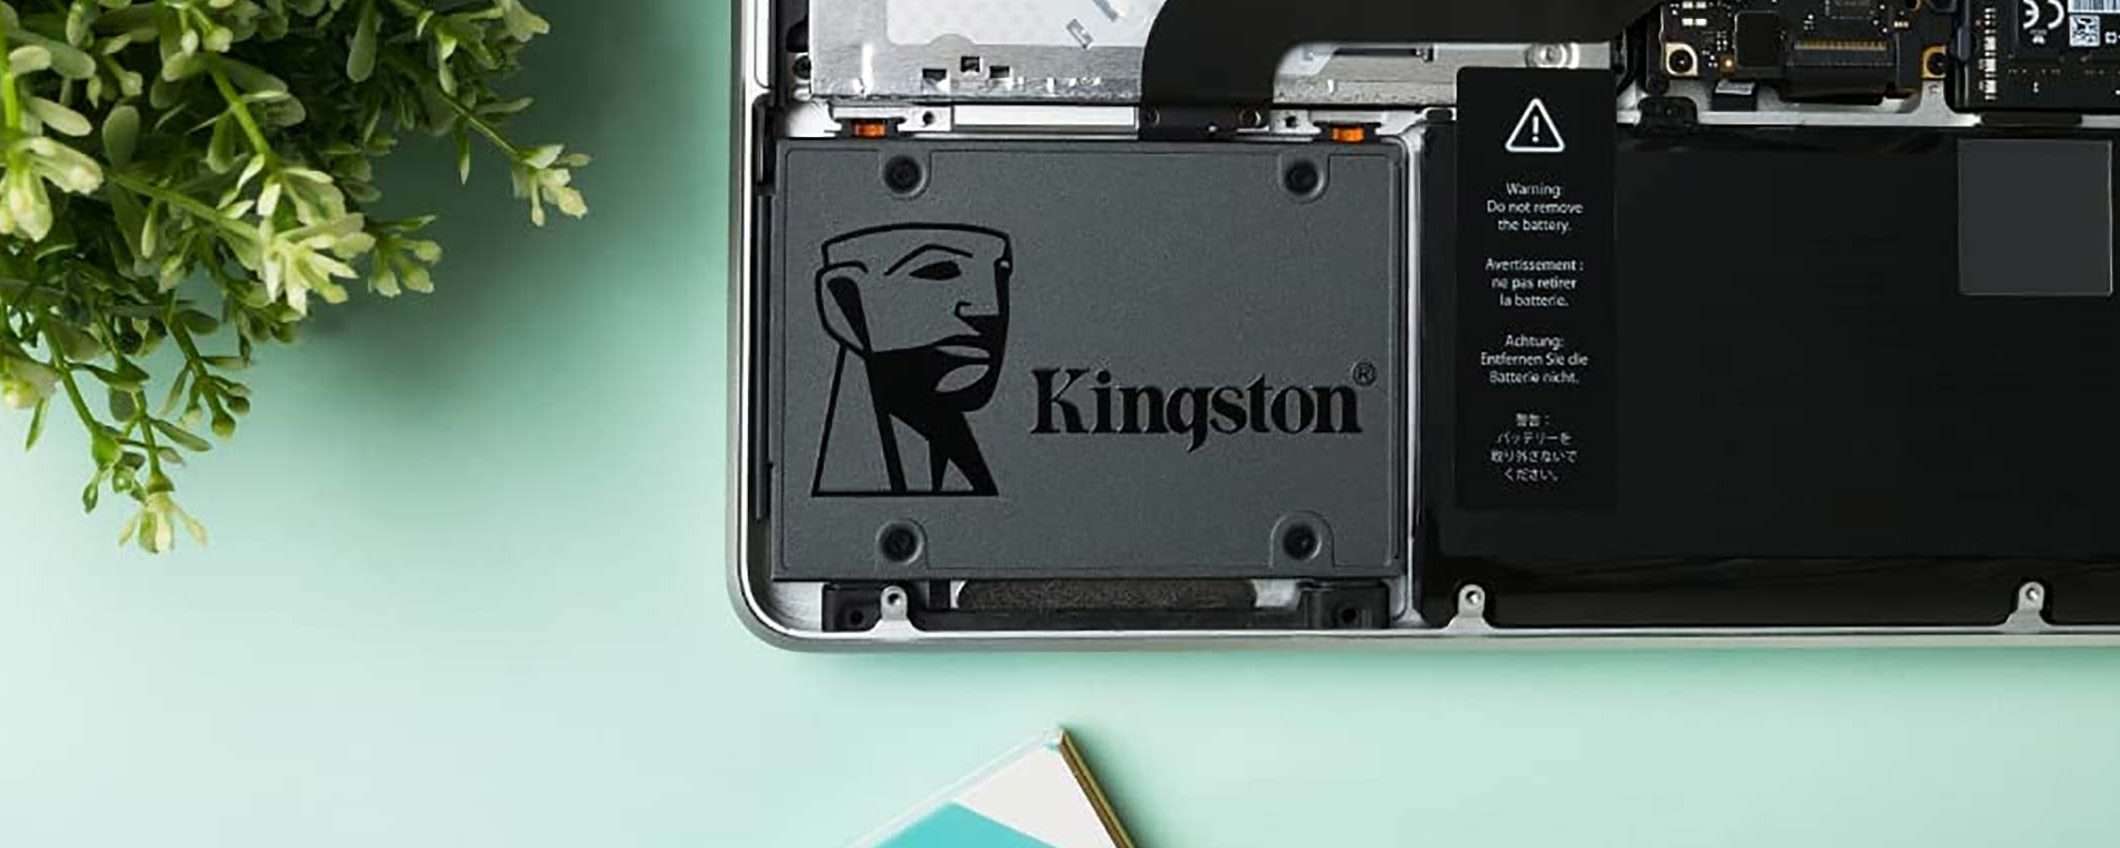 SSD Kingston A400 da 240GB: su eBay promozione da cogliere al volo!